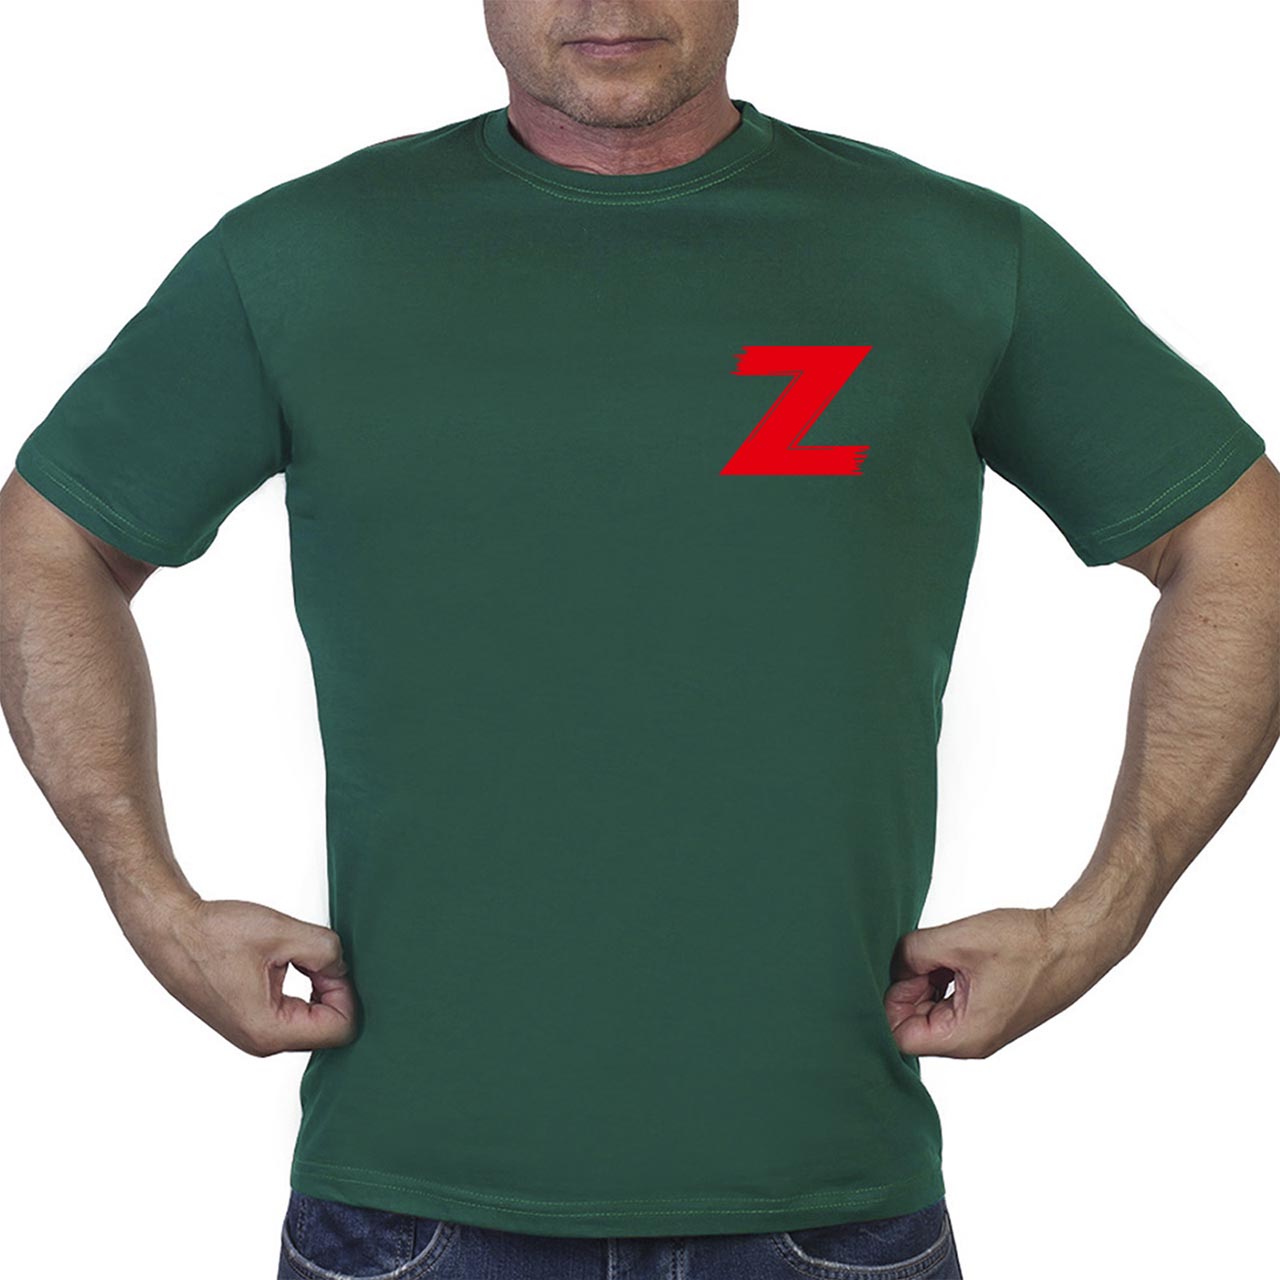 Купить зеленую футболку "Z"